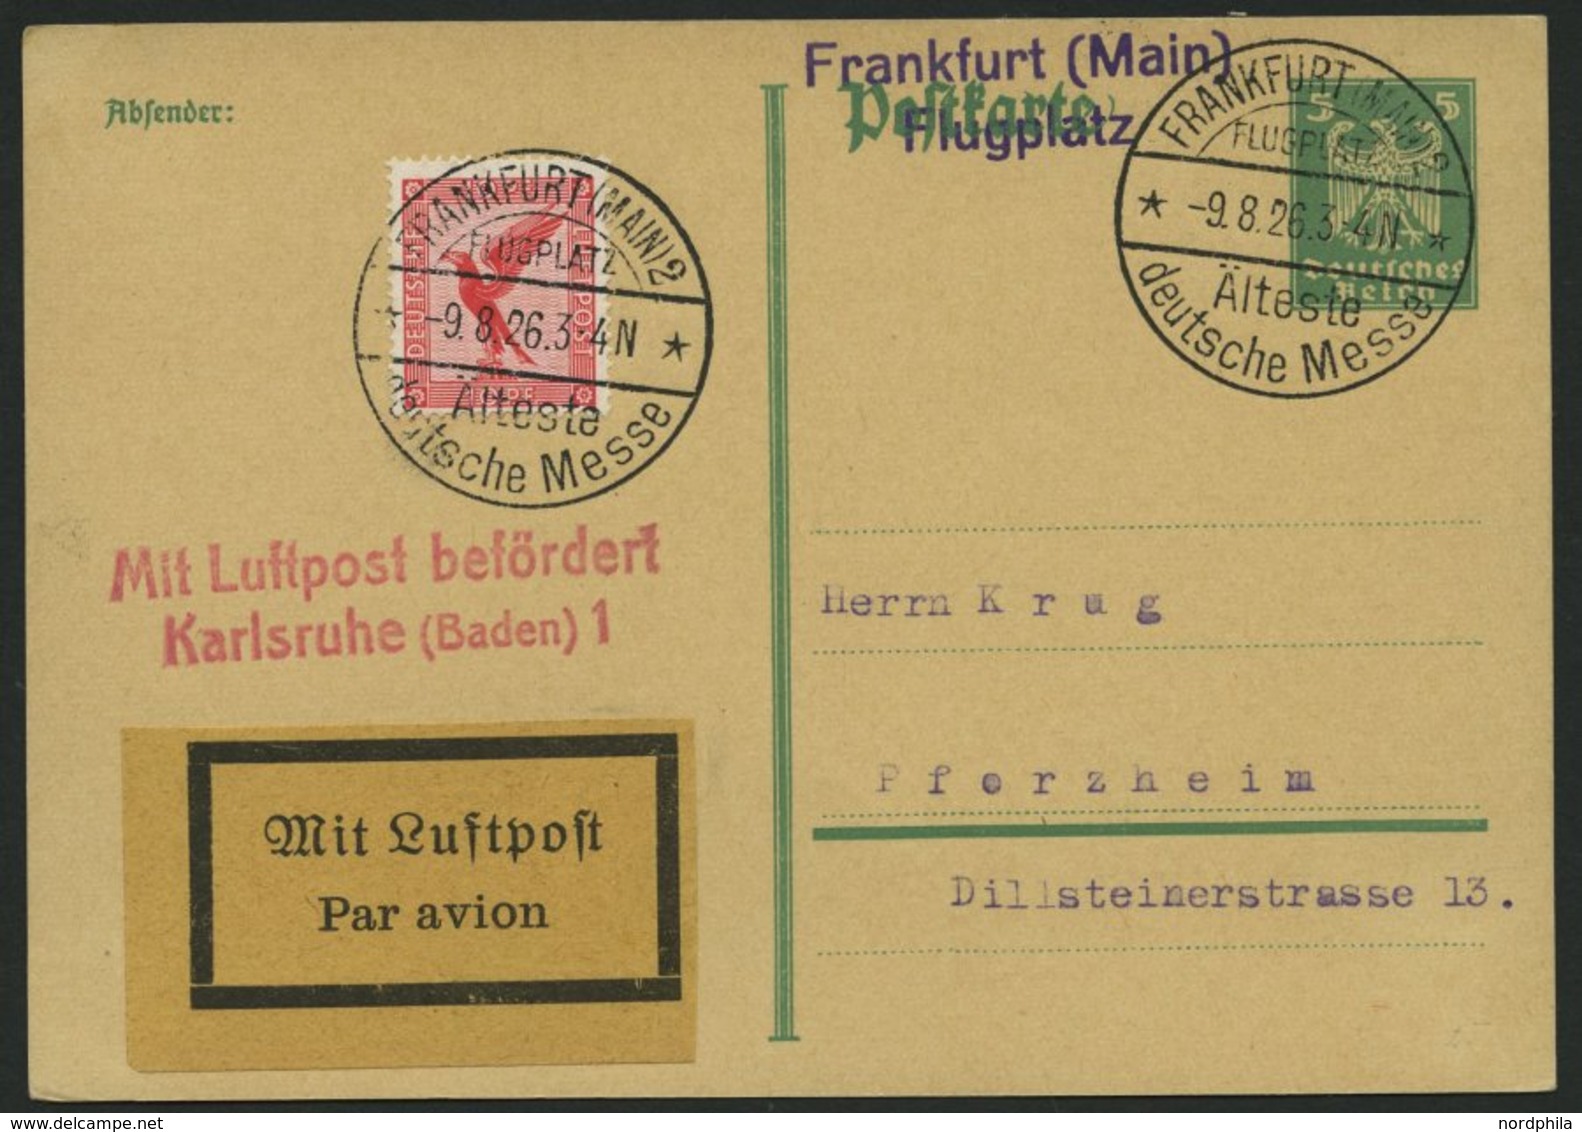 LUFTPOSTBESTÄTIGUNGSSTPL 59-02a BRIEF, KARLSRUHE 1, L2 In Rot, Postkarte Von FRANKFURT (MAIN) 2 Nach Pforzheim, Pracht - Posta Aerea & Zeppelin